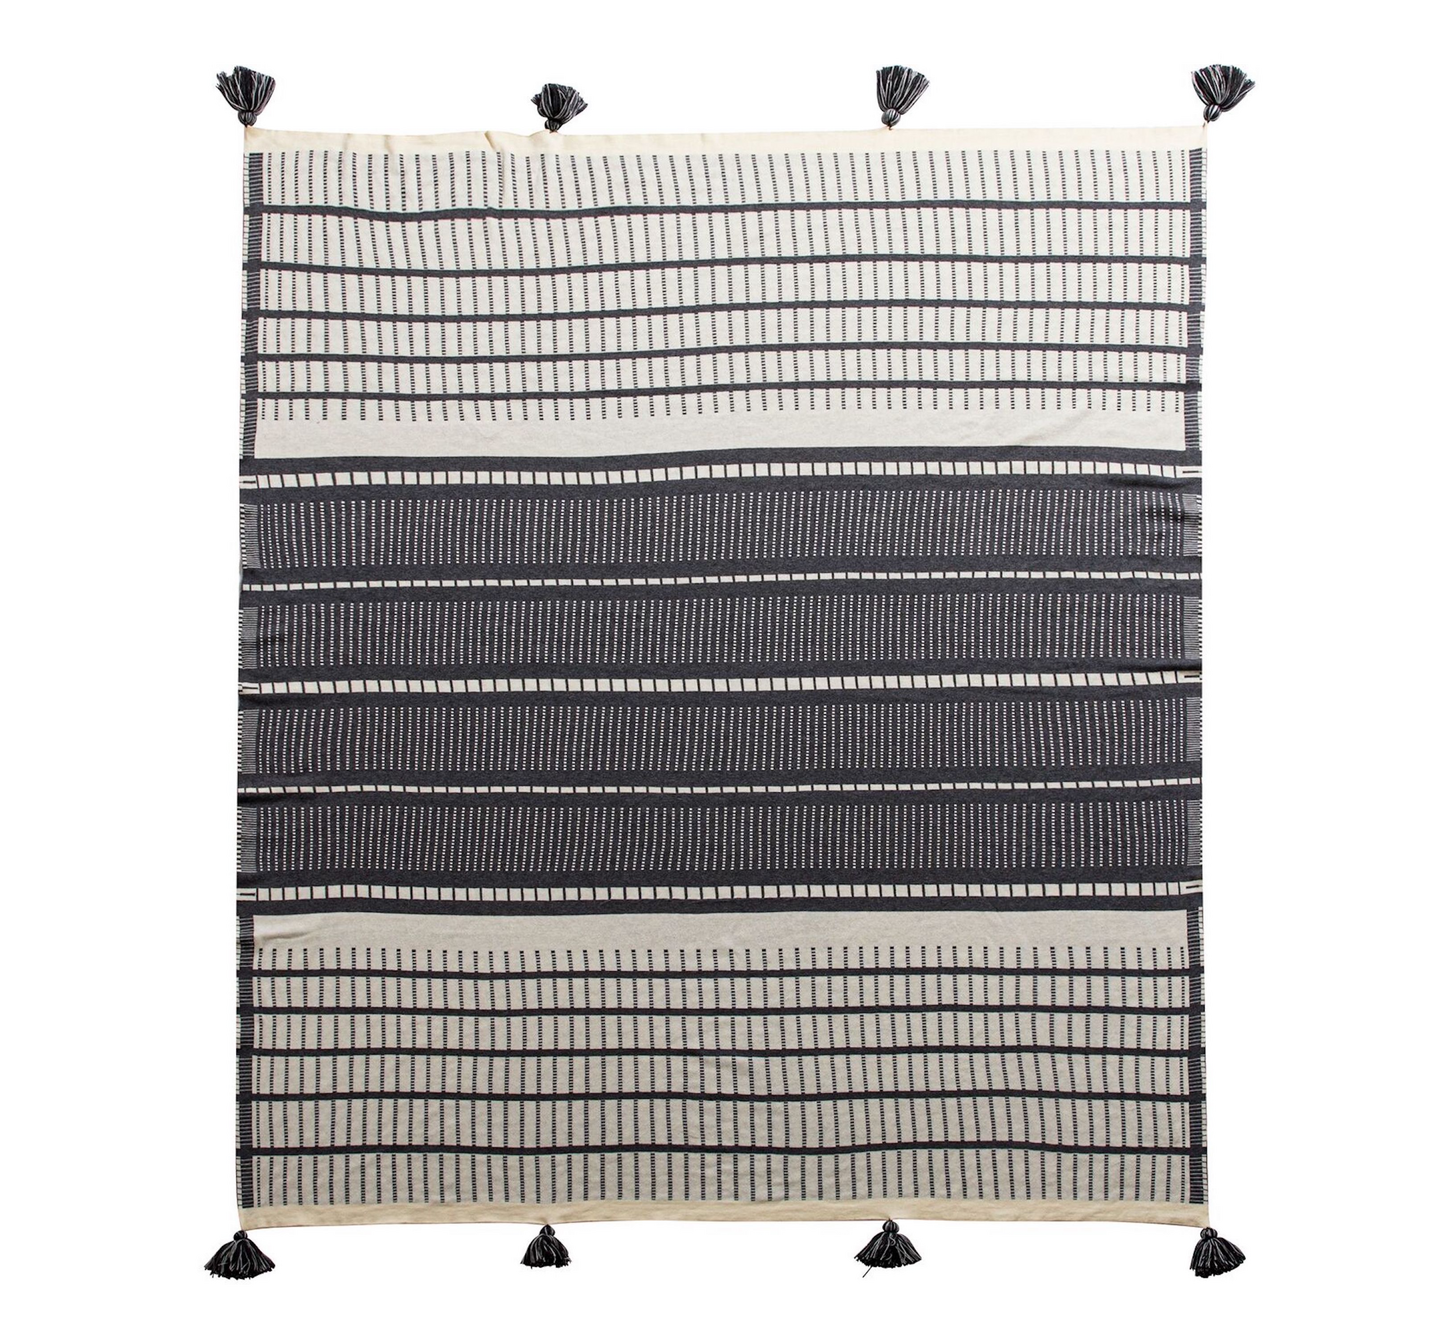 Modern Tassels Cotton Textured Throws Blanket Black/White 63" X 51"